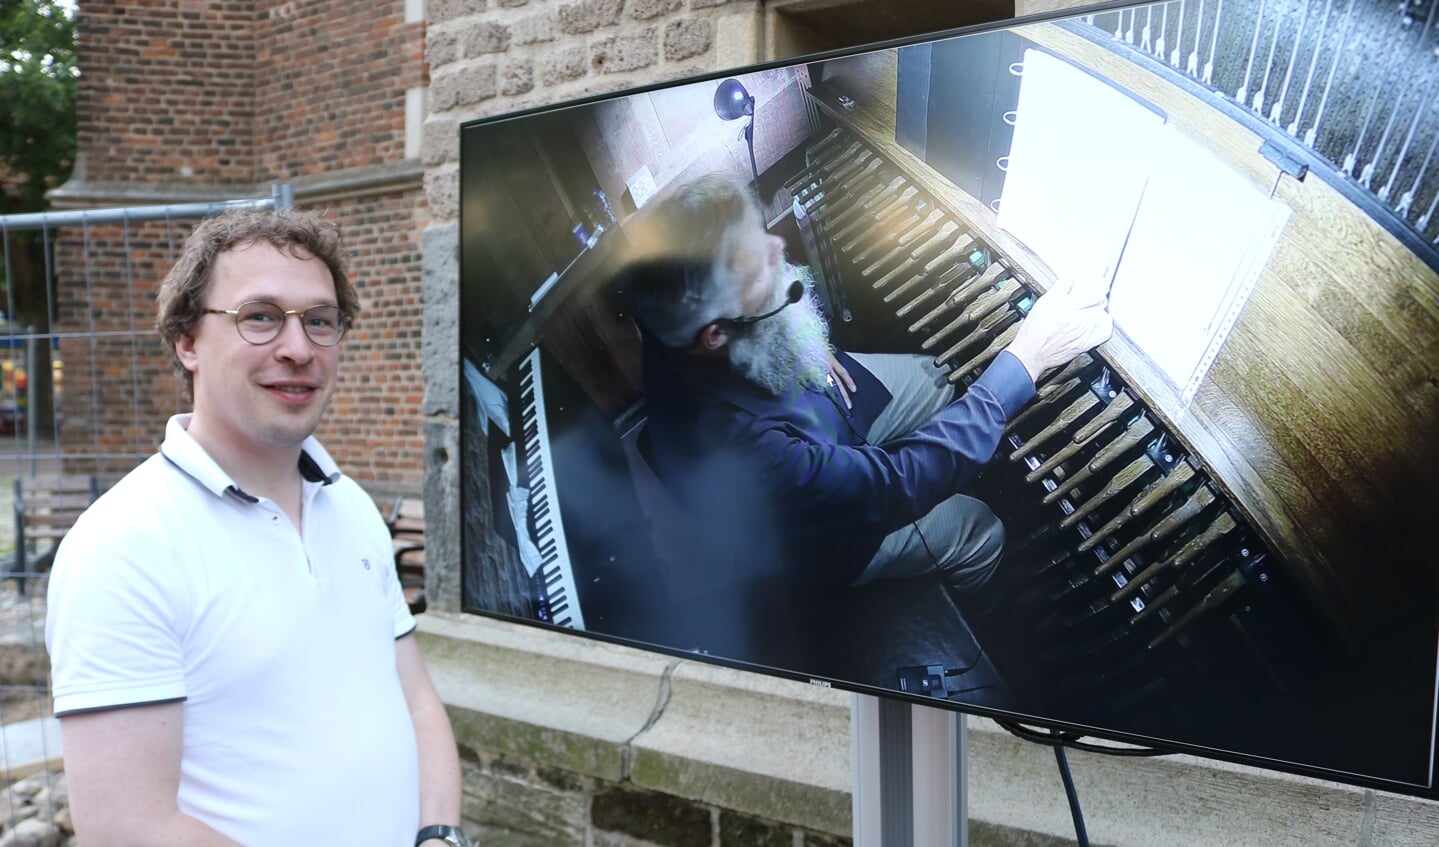 Stadbeiaardier van Gudulakerk Jan-Geert Heuvelman bij het beeldscherm waar te zien was dat Boudewijn Zwart het carillon bespeelde. Foto: Arjen Dieperink